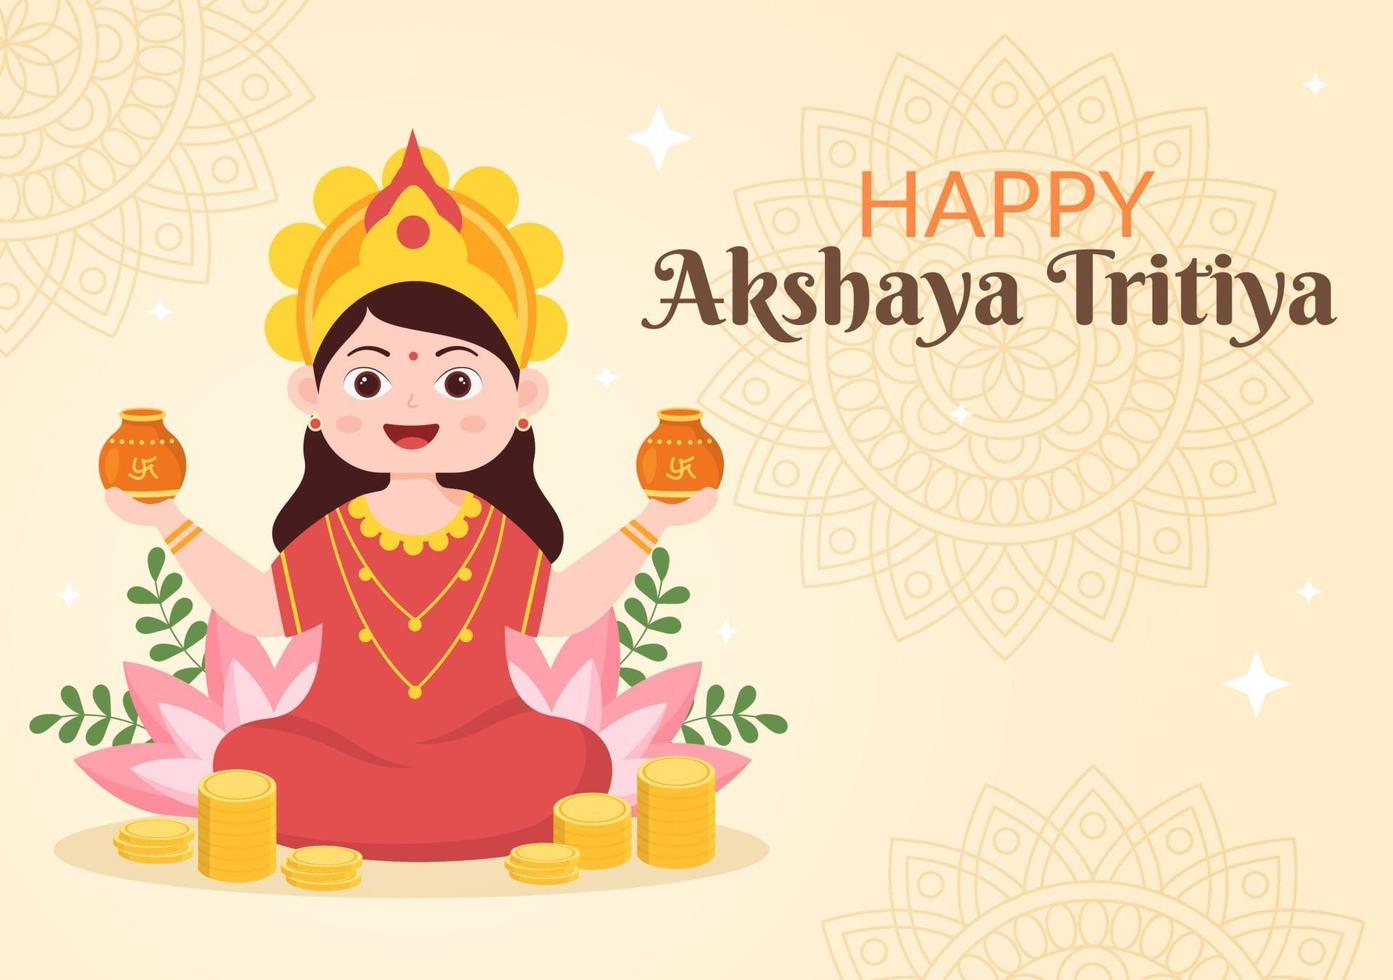 festival akshaya tritiya com um kalash dourado, pote e moedas de ouro para celebração de dhanteras com maa lakshmi no índio em ilustração de modelo de plano de fundo decorado vetor